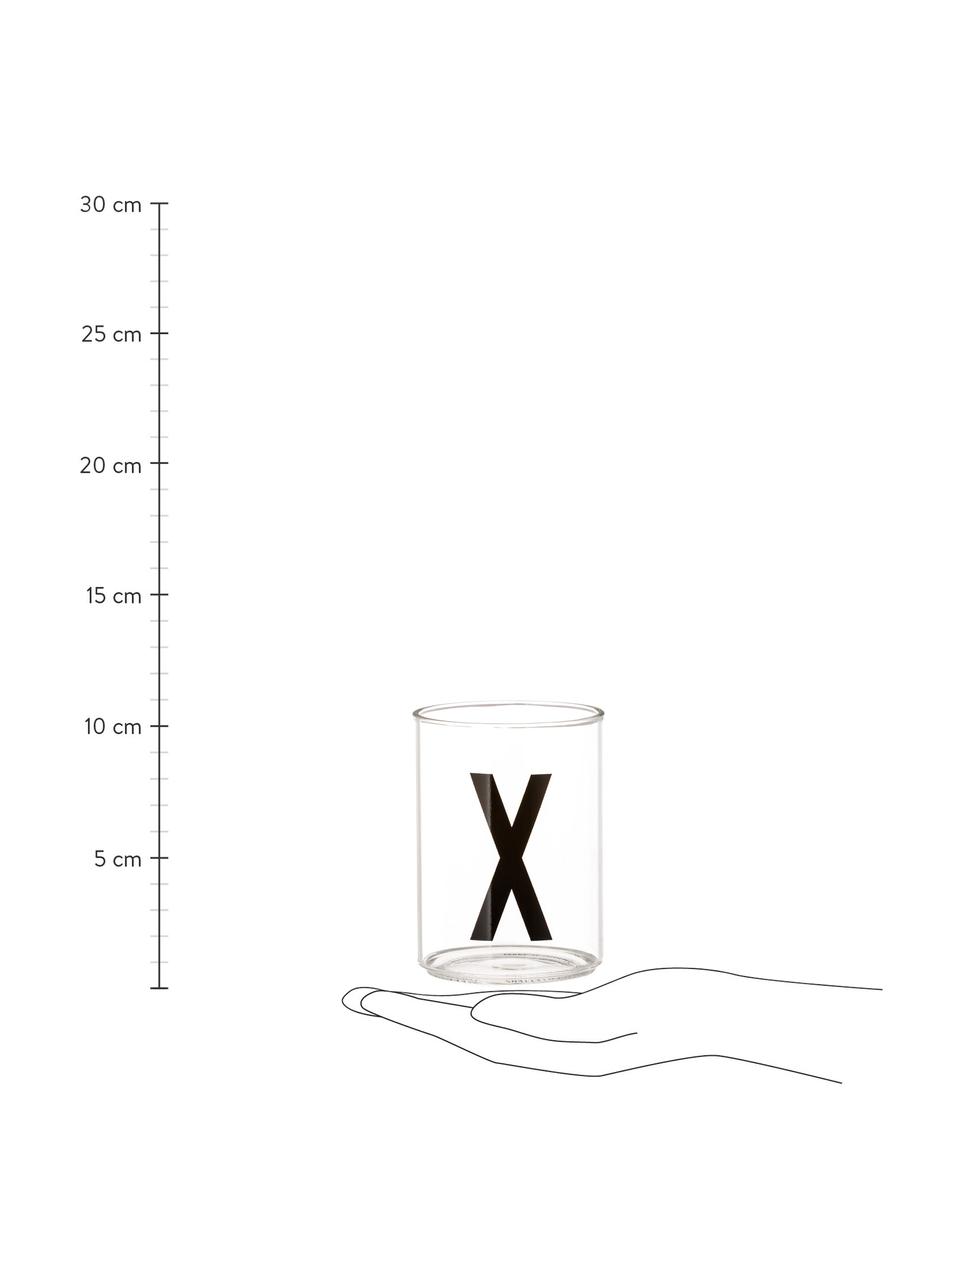 Bicchiere acqua di design in vetro con lettera Personal (varianti dalla A alla Z), Vetro borosilicato, Trasparente, nero, Bicchiere per l'acqua A, 300 ml